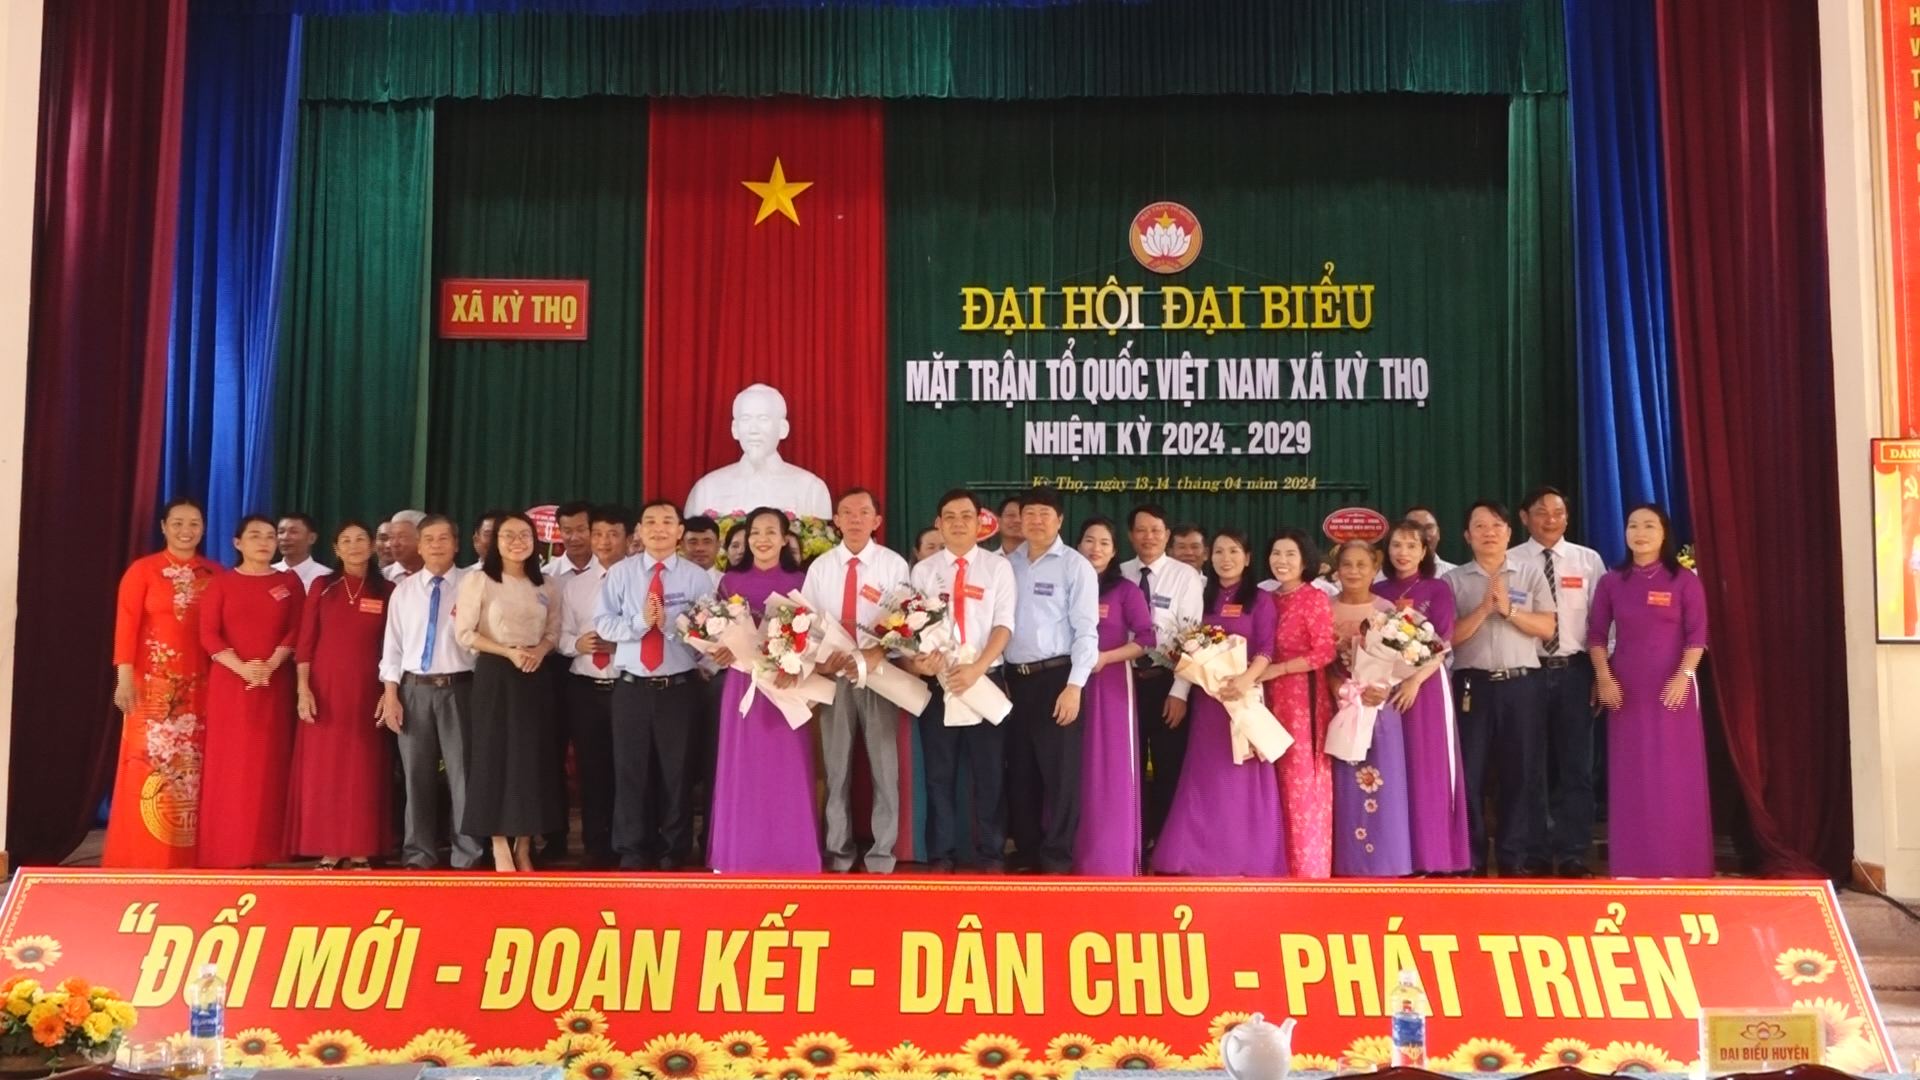 Đại hội đại biểu MTTQ Việt Nam xã Kỳ Thọ lần thứ XXI, nhiệm kỳ 2024 - 2029